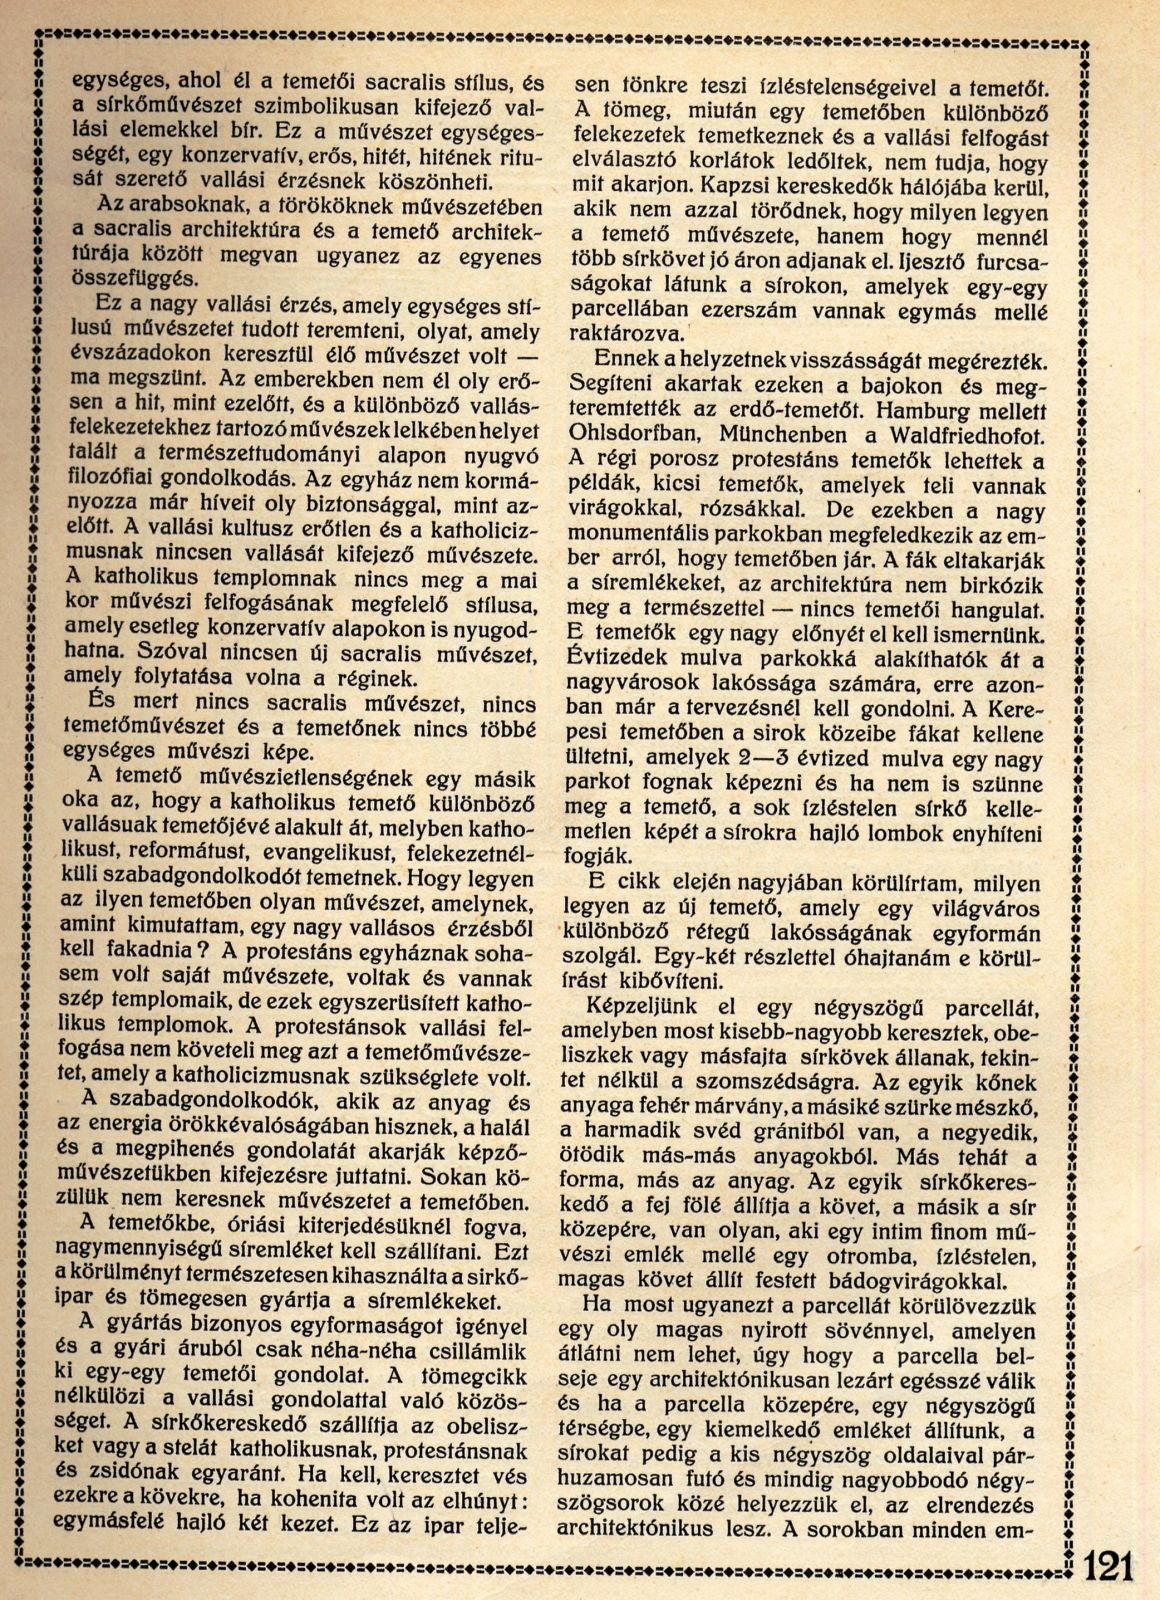 08_Magyar Iparművészet, 1914/3. 121. p.